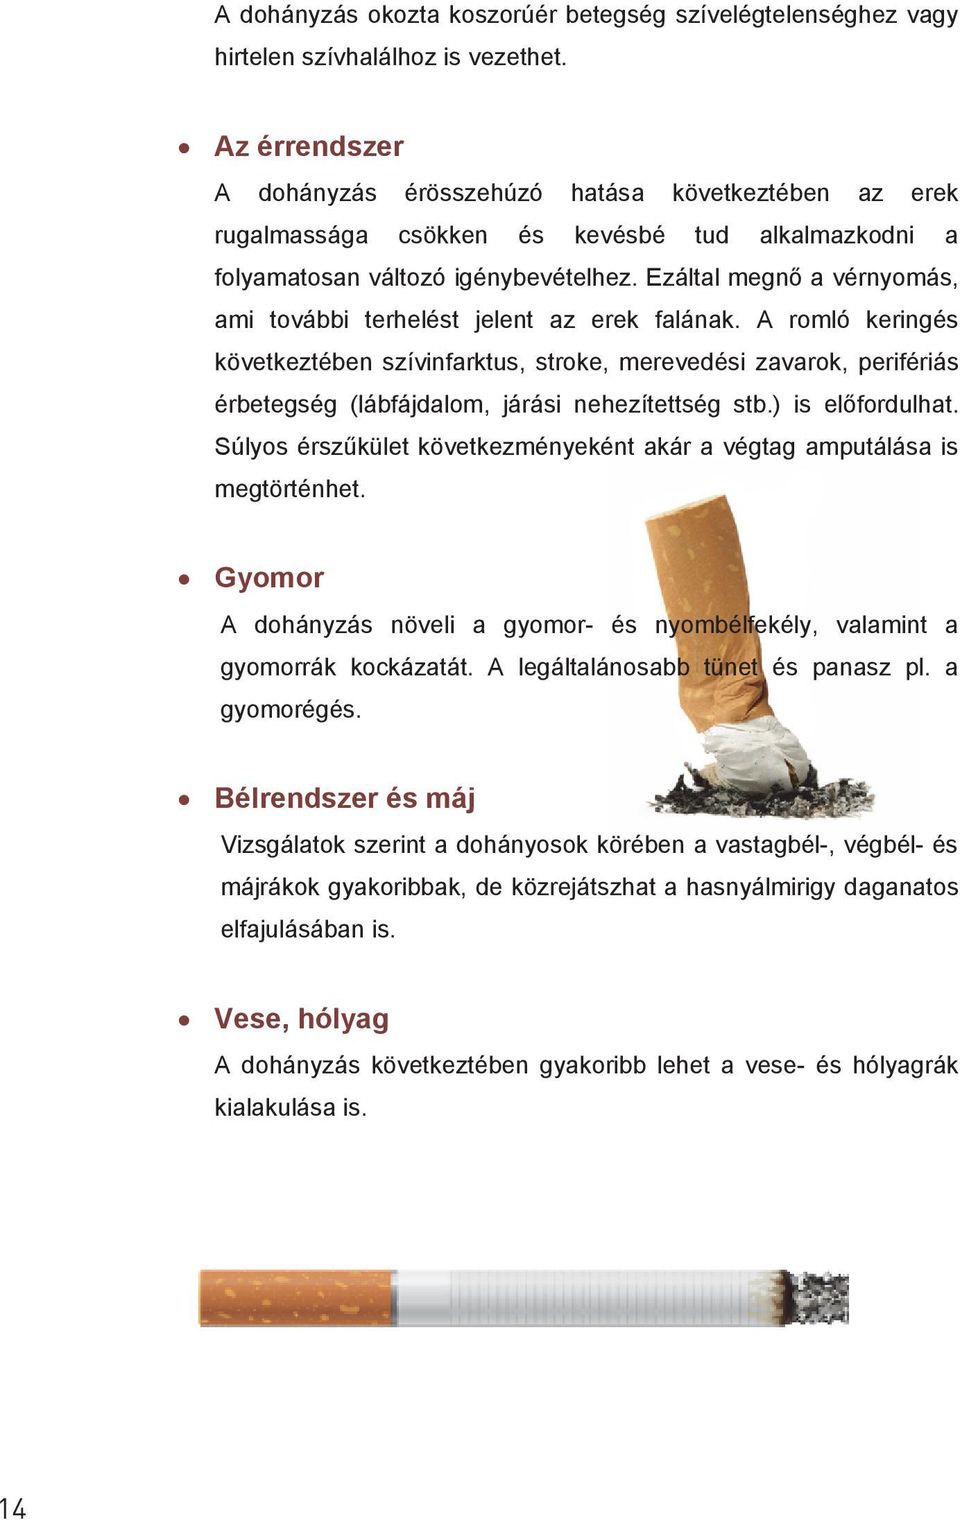 A cigaretta és az alkohol hatása az emberi nyomásra